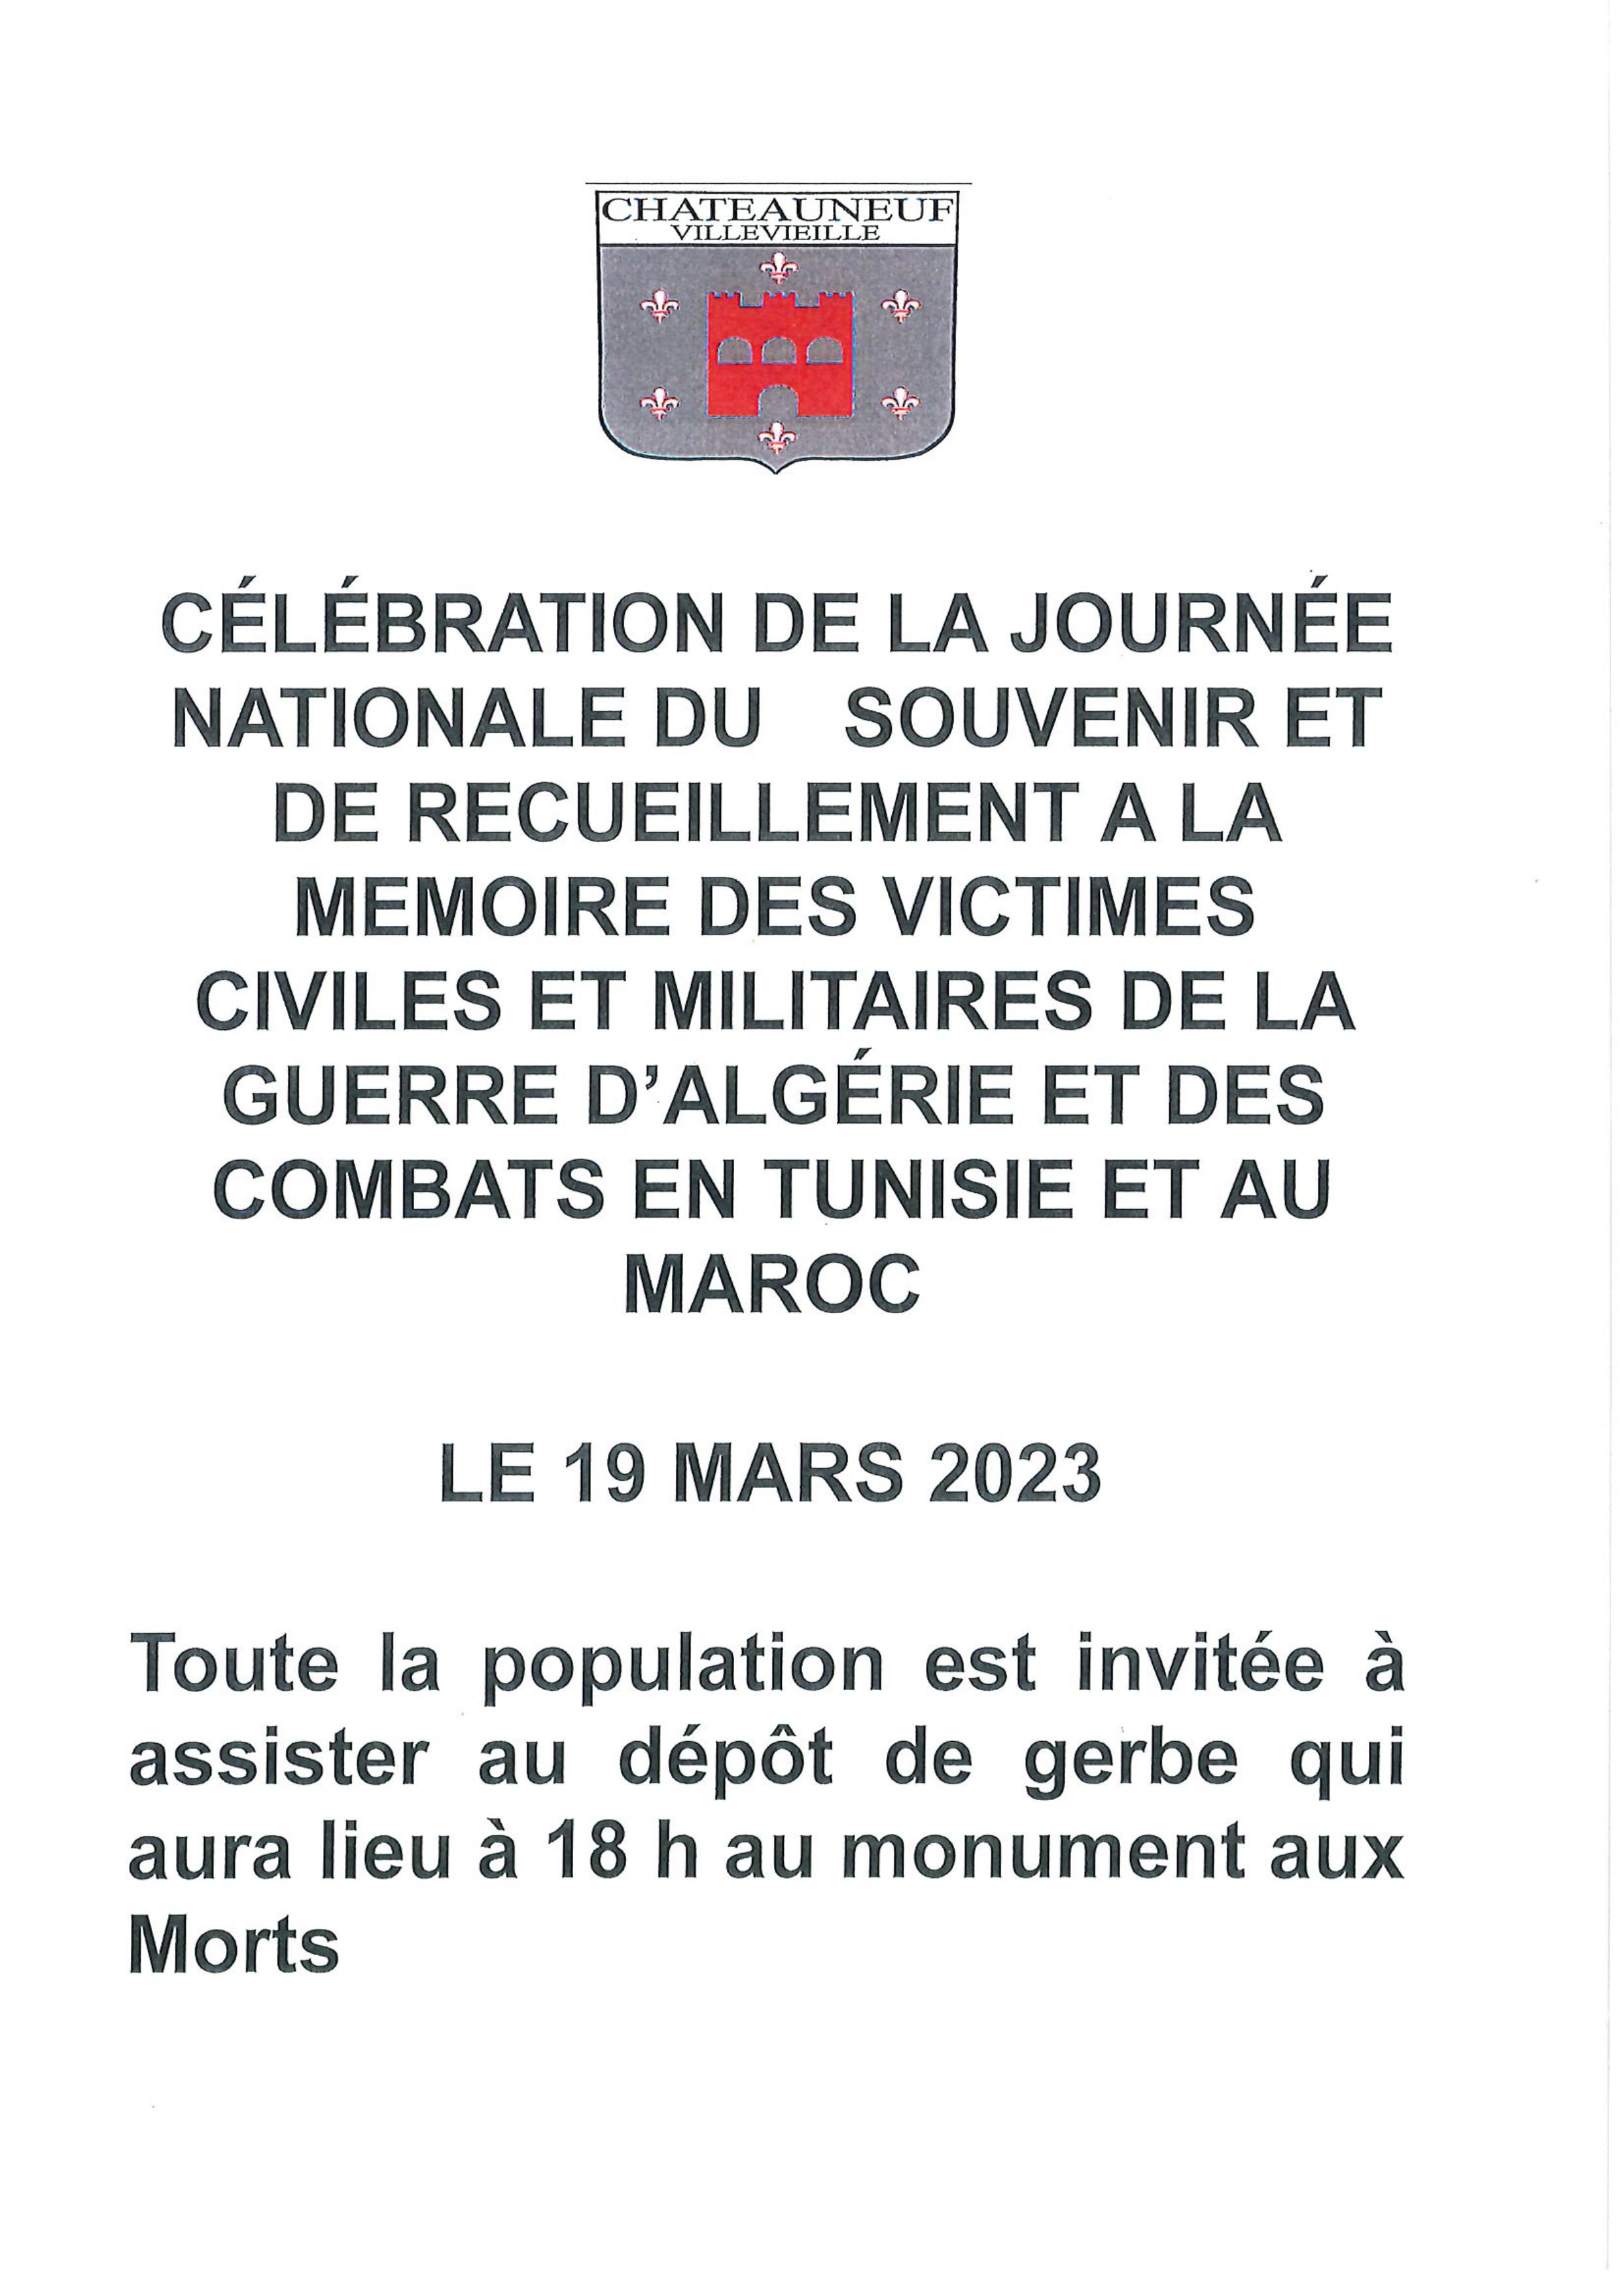 Célébration de la journée nationale d’hommage « morts pour la France »pendant la guerre d’Algérie et les combats du Maroc et de la Tunisie